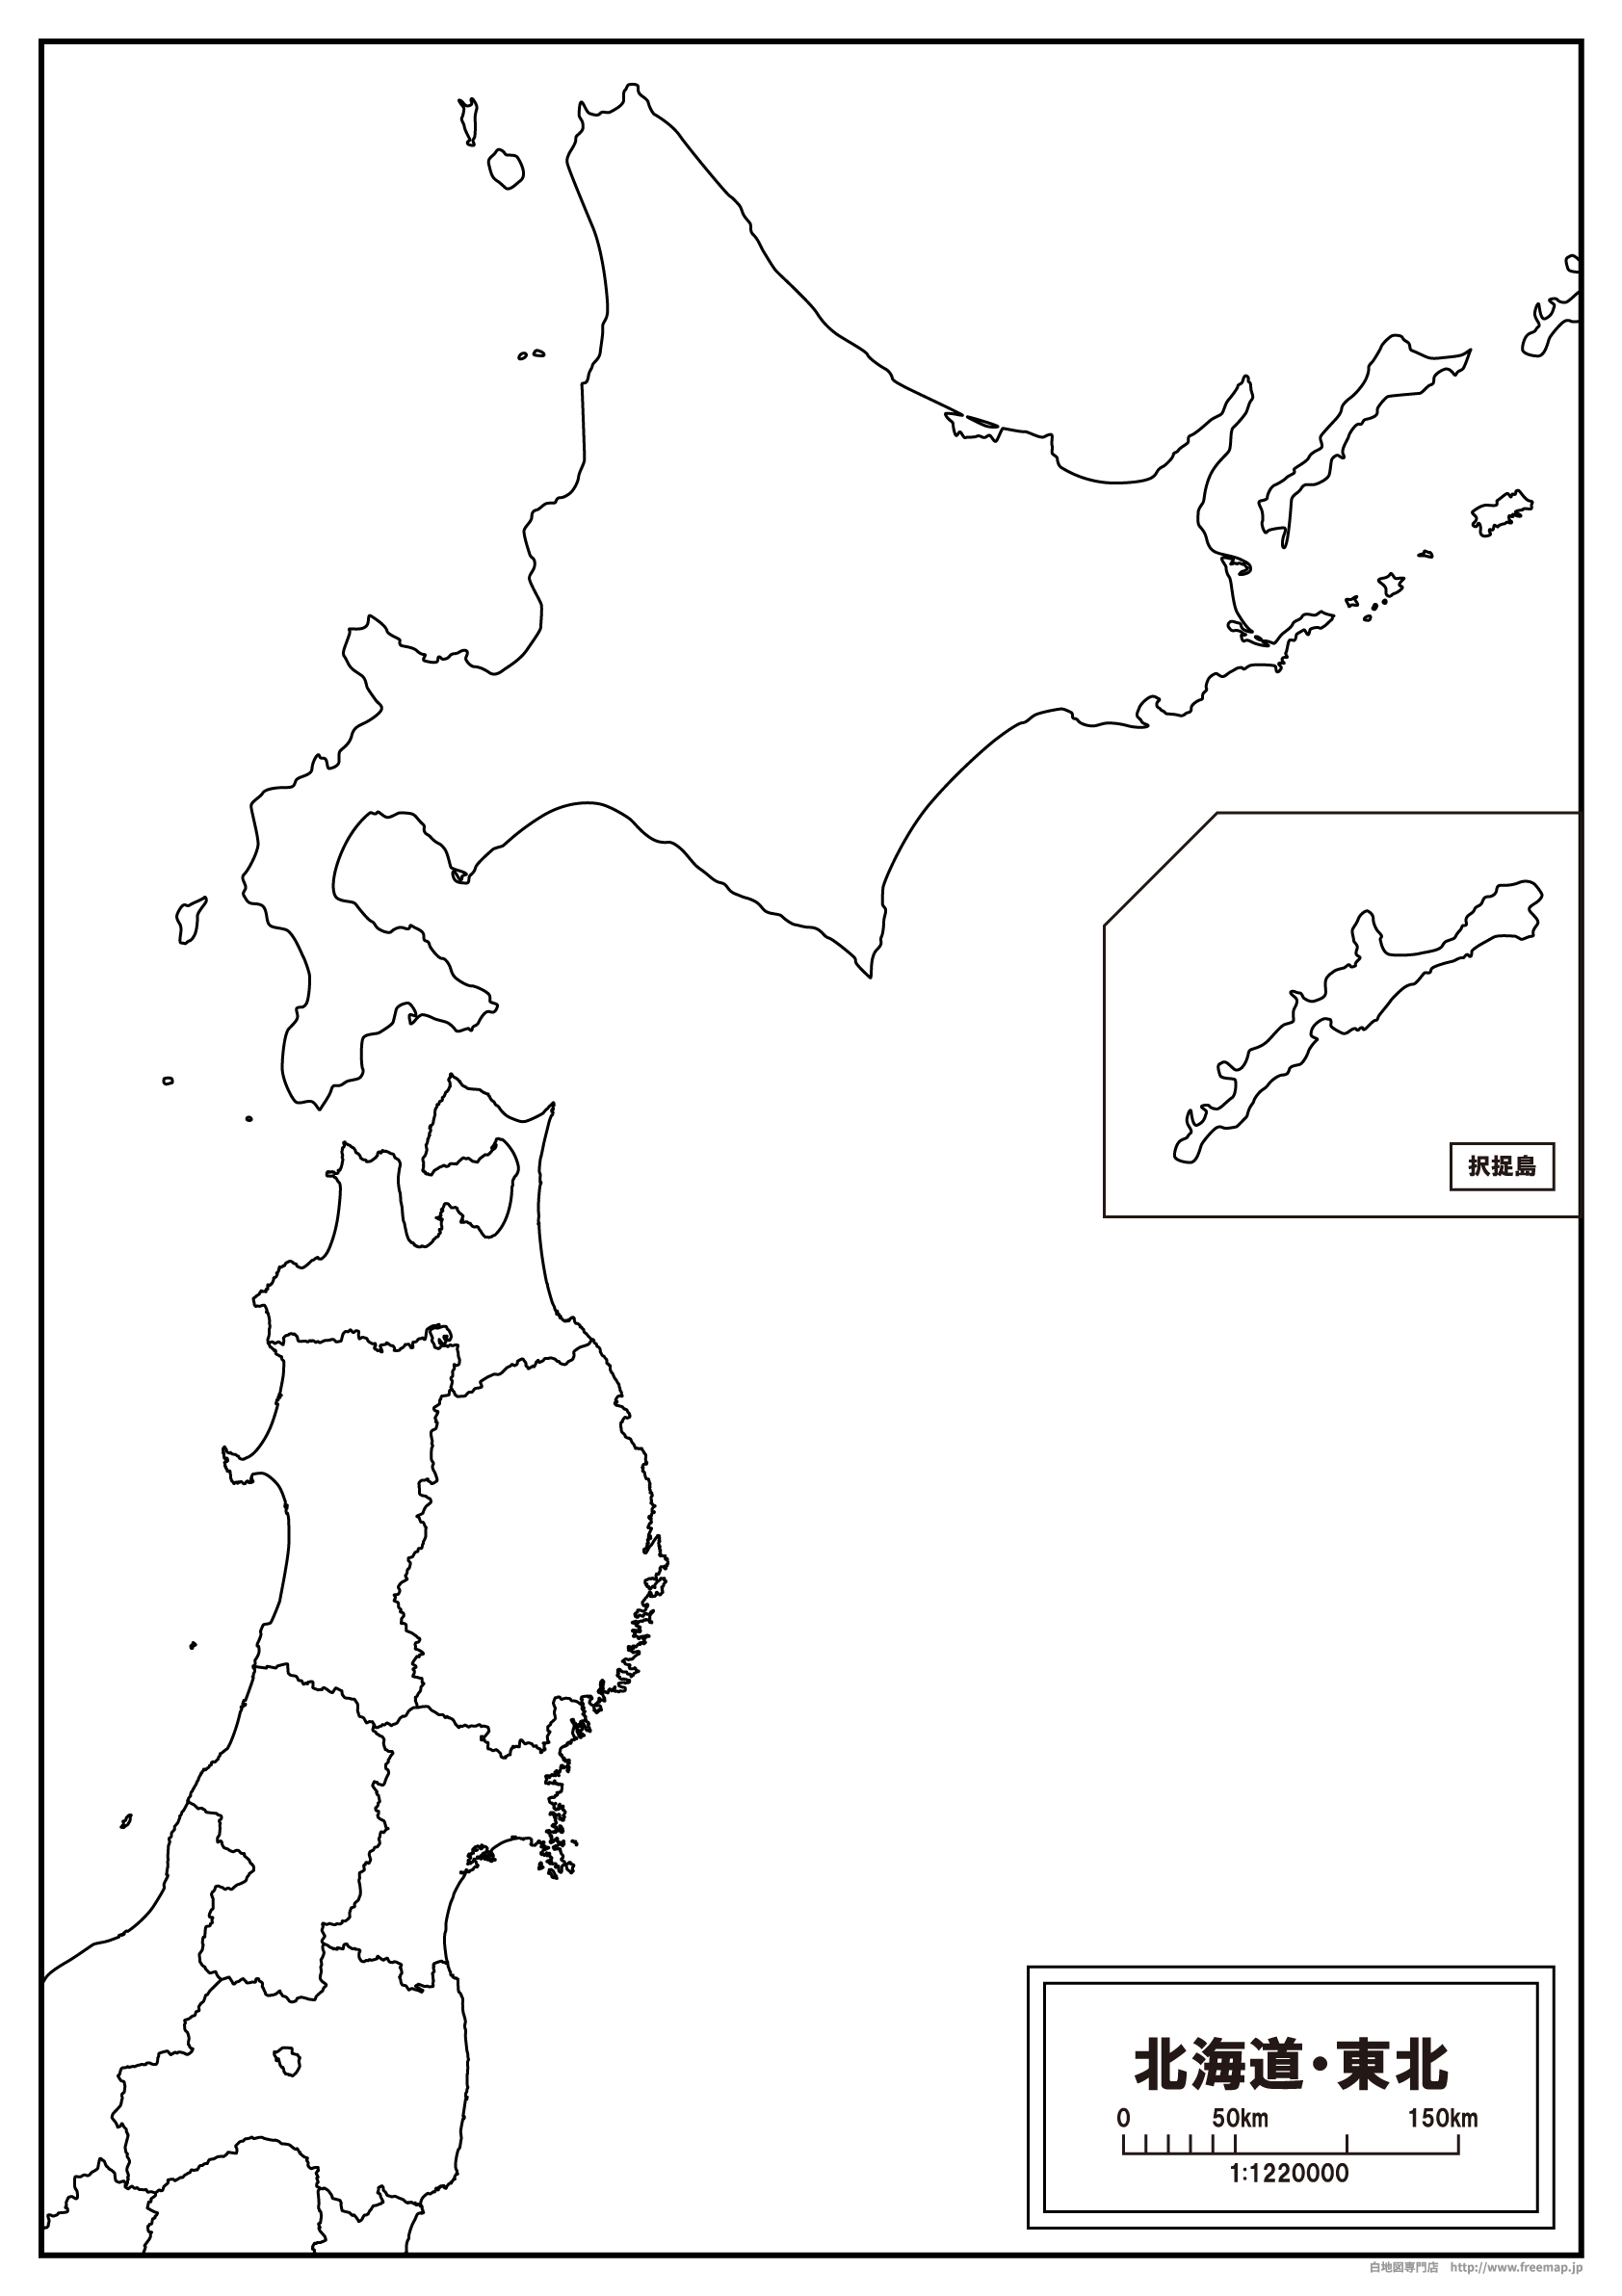 【白地図】北海道・東北地方